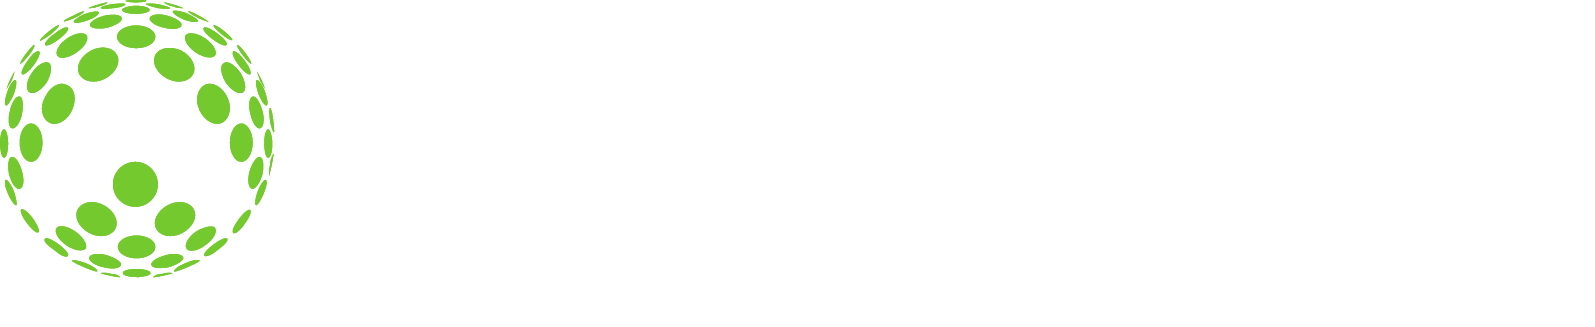 Allscripts Logo groß für dunkle Hintergründe (transparentes PNG)